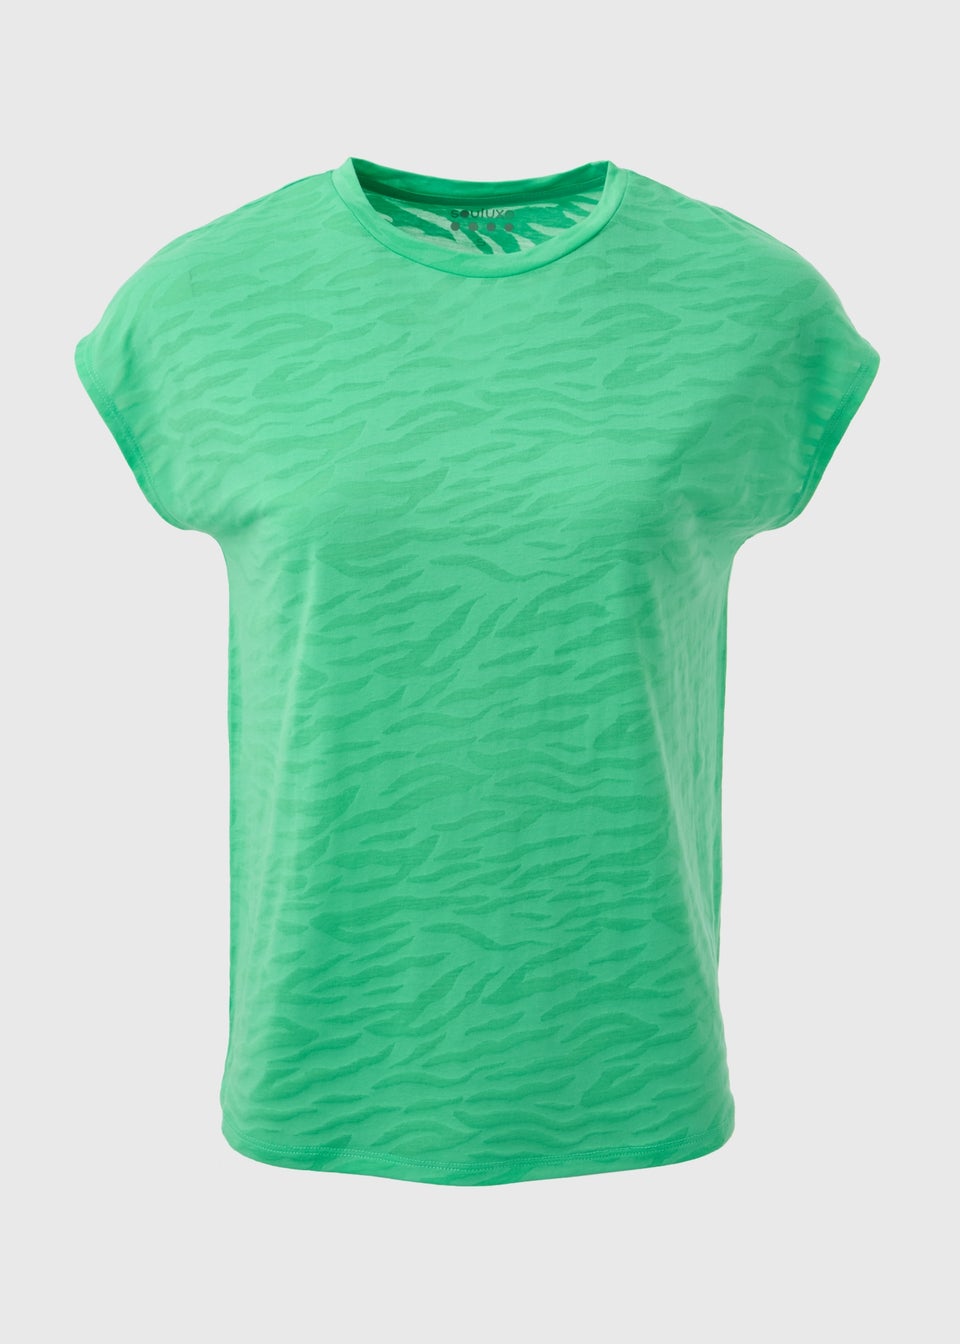 Souluxe Green Burnout T-Shirt